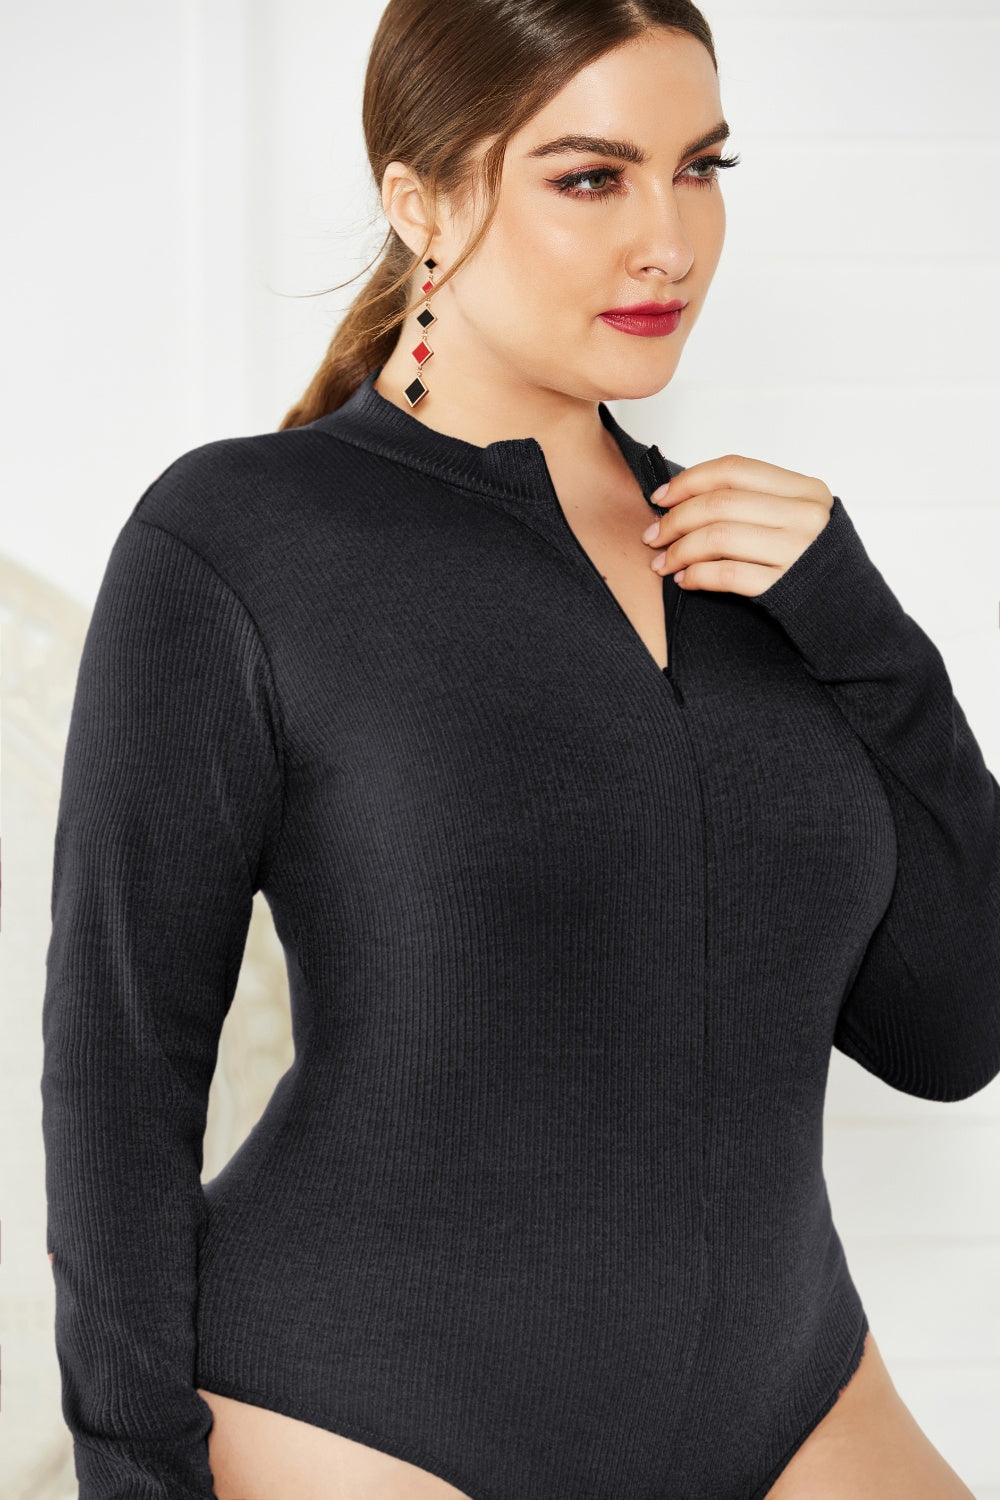 BodiModi UrbanFit ® Zip-Up Long Sleeve Bodysuit - Trendy Plus Size